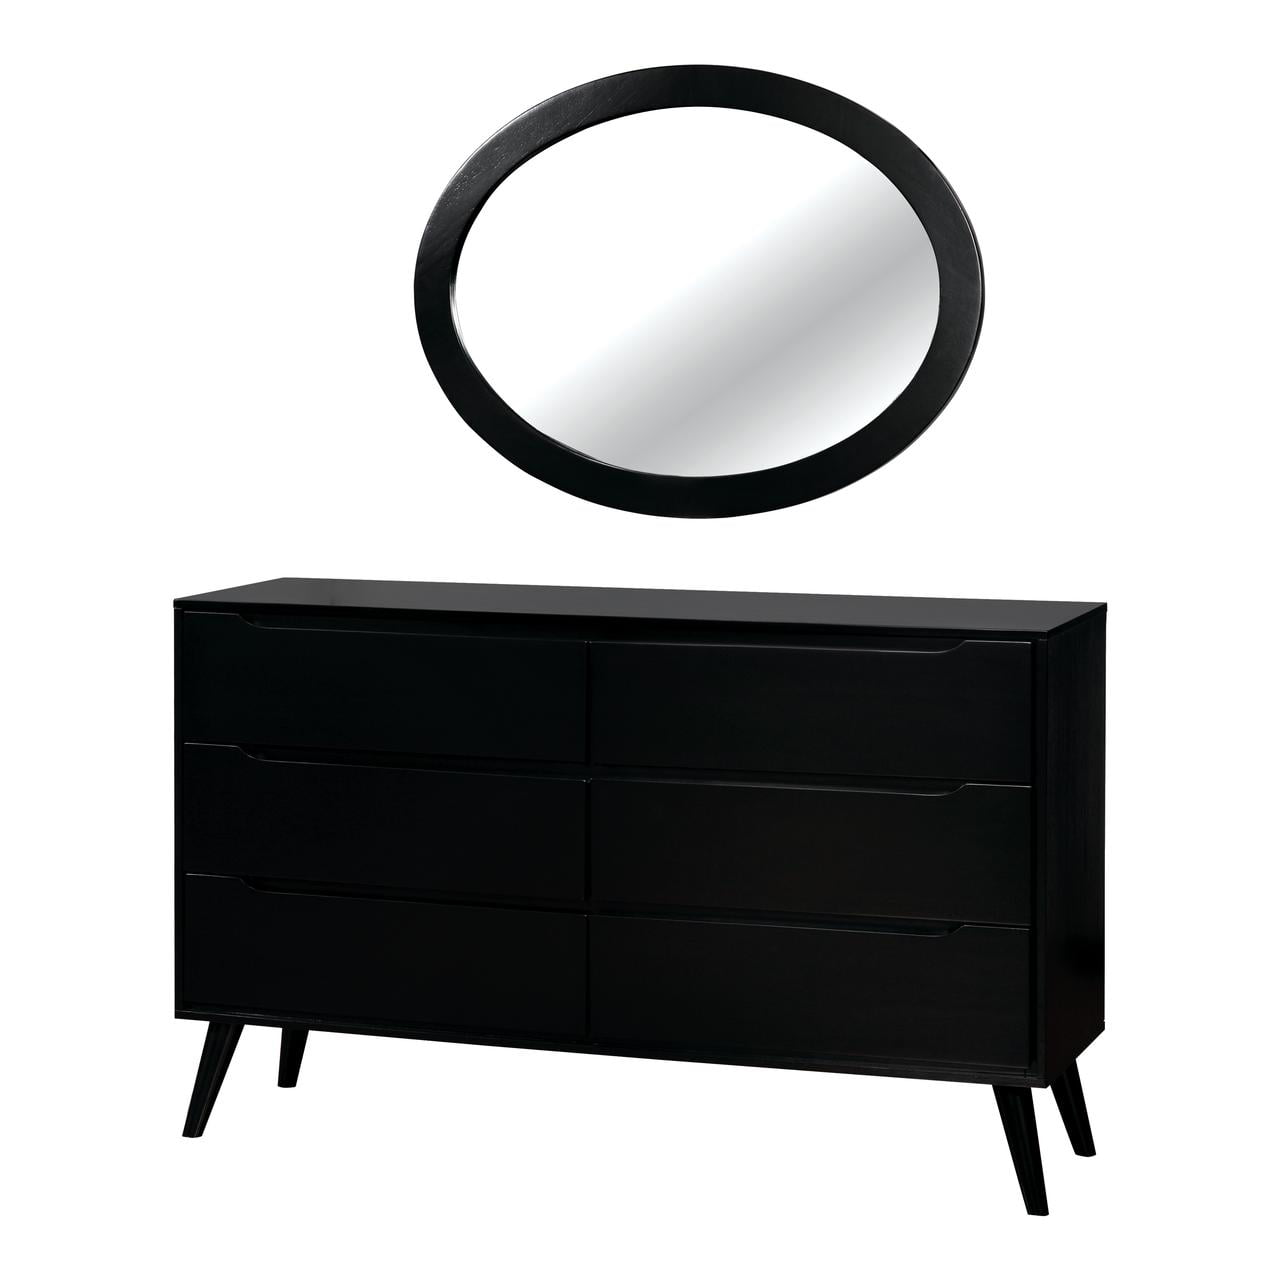 Dresser And Oval Mirror Set, 2 Piece Black Dresser Set With Mirror